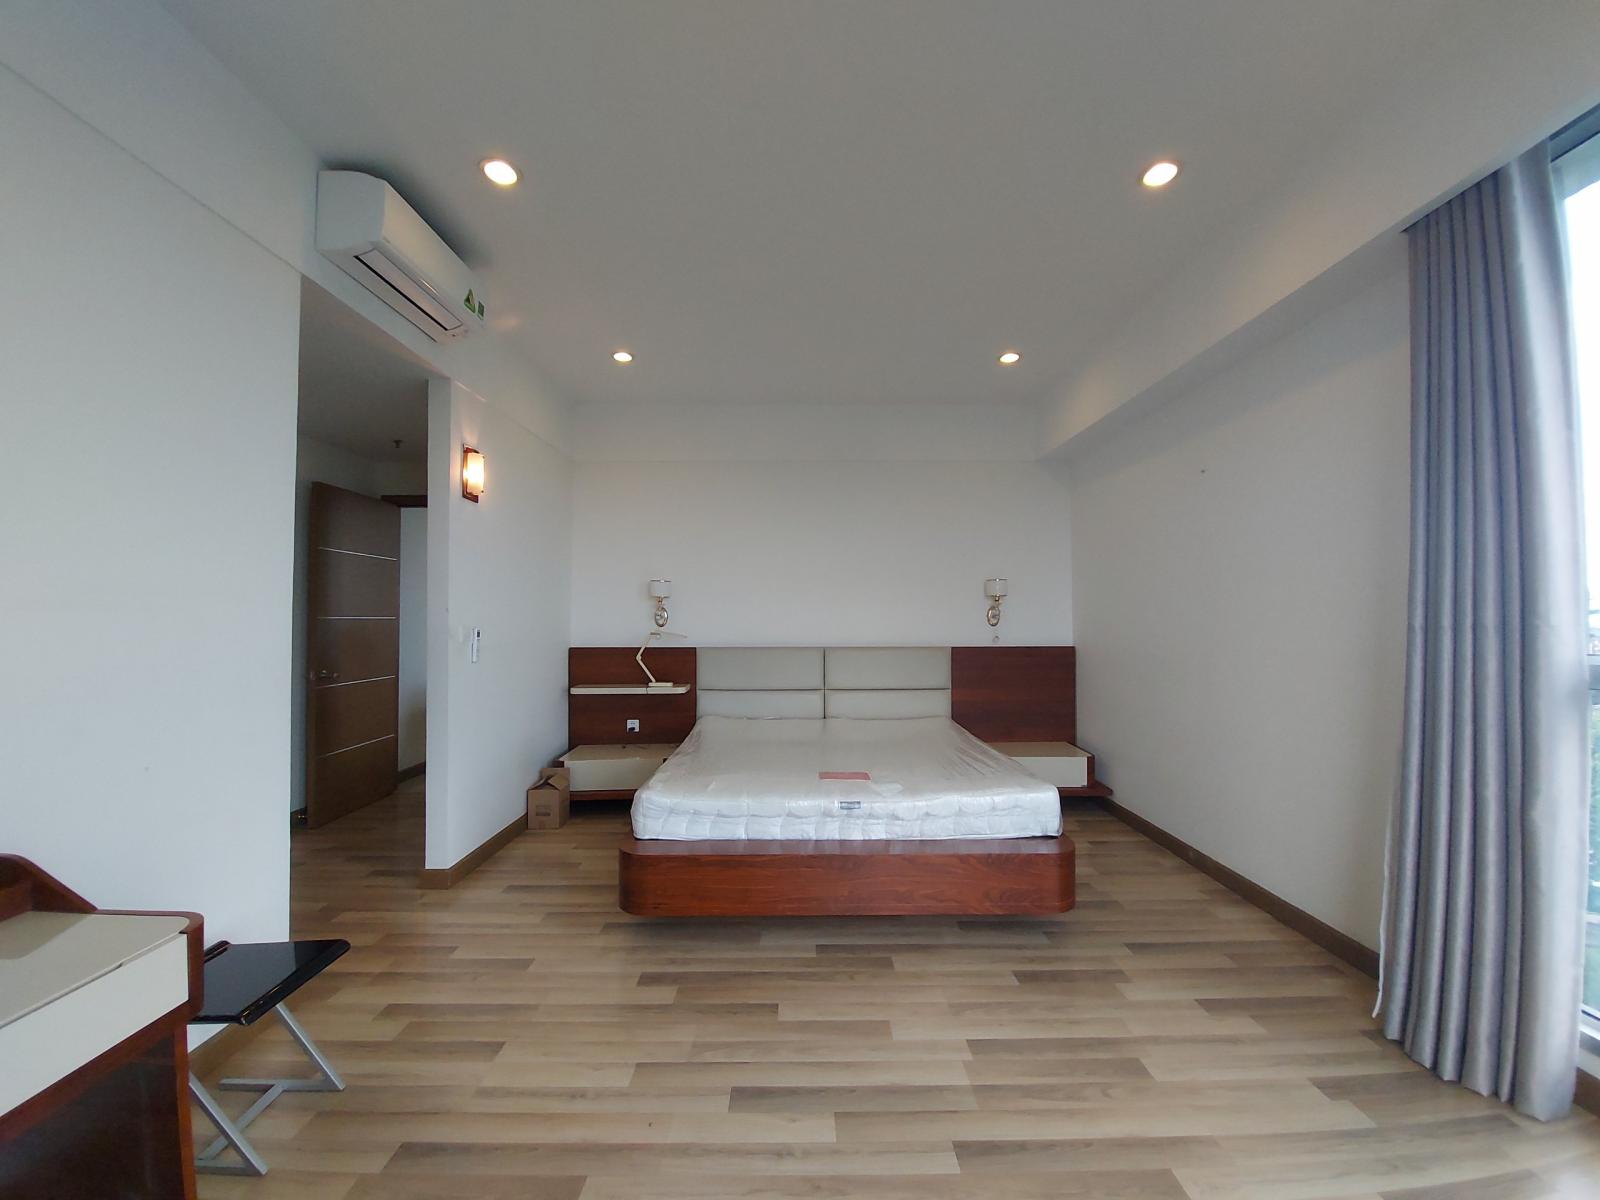 HÀNG HOT! Thuê căn hộ 3 phòng ngủ DT 125m2 Sài Gòn Airport Plaza đầy đủ nội thát #18 Triệu - Giữ chìa khóa căn hộ